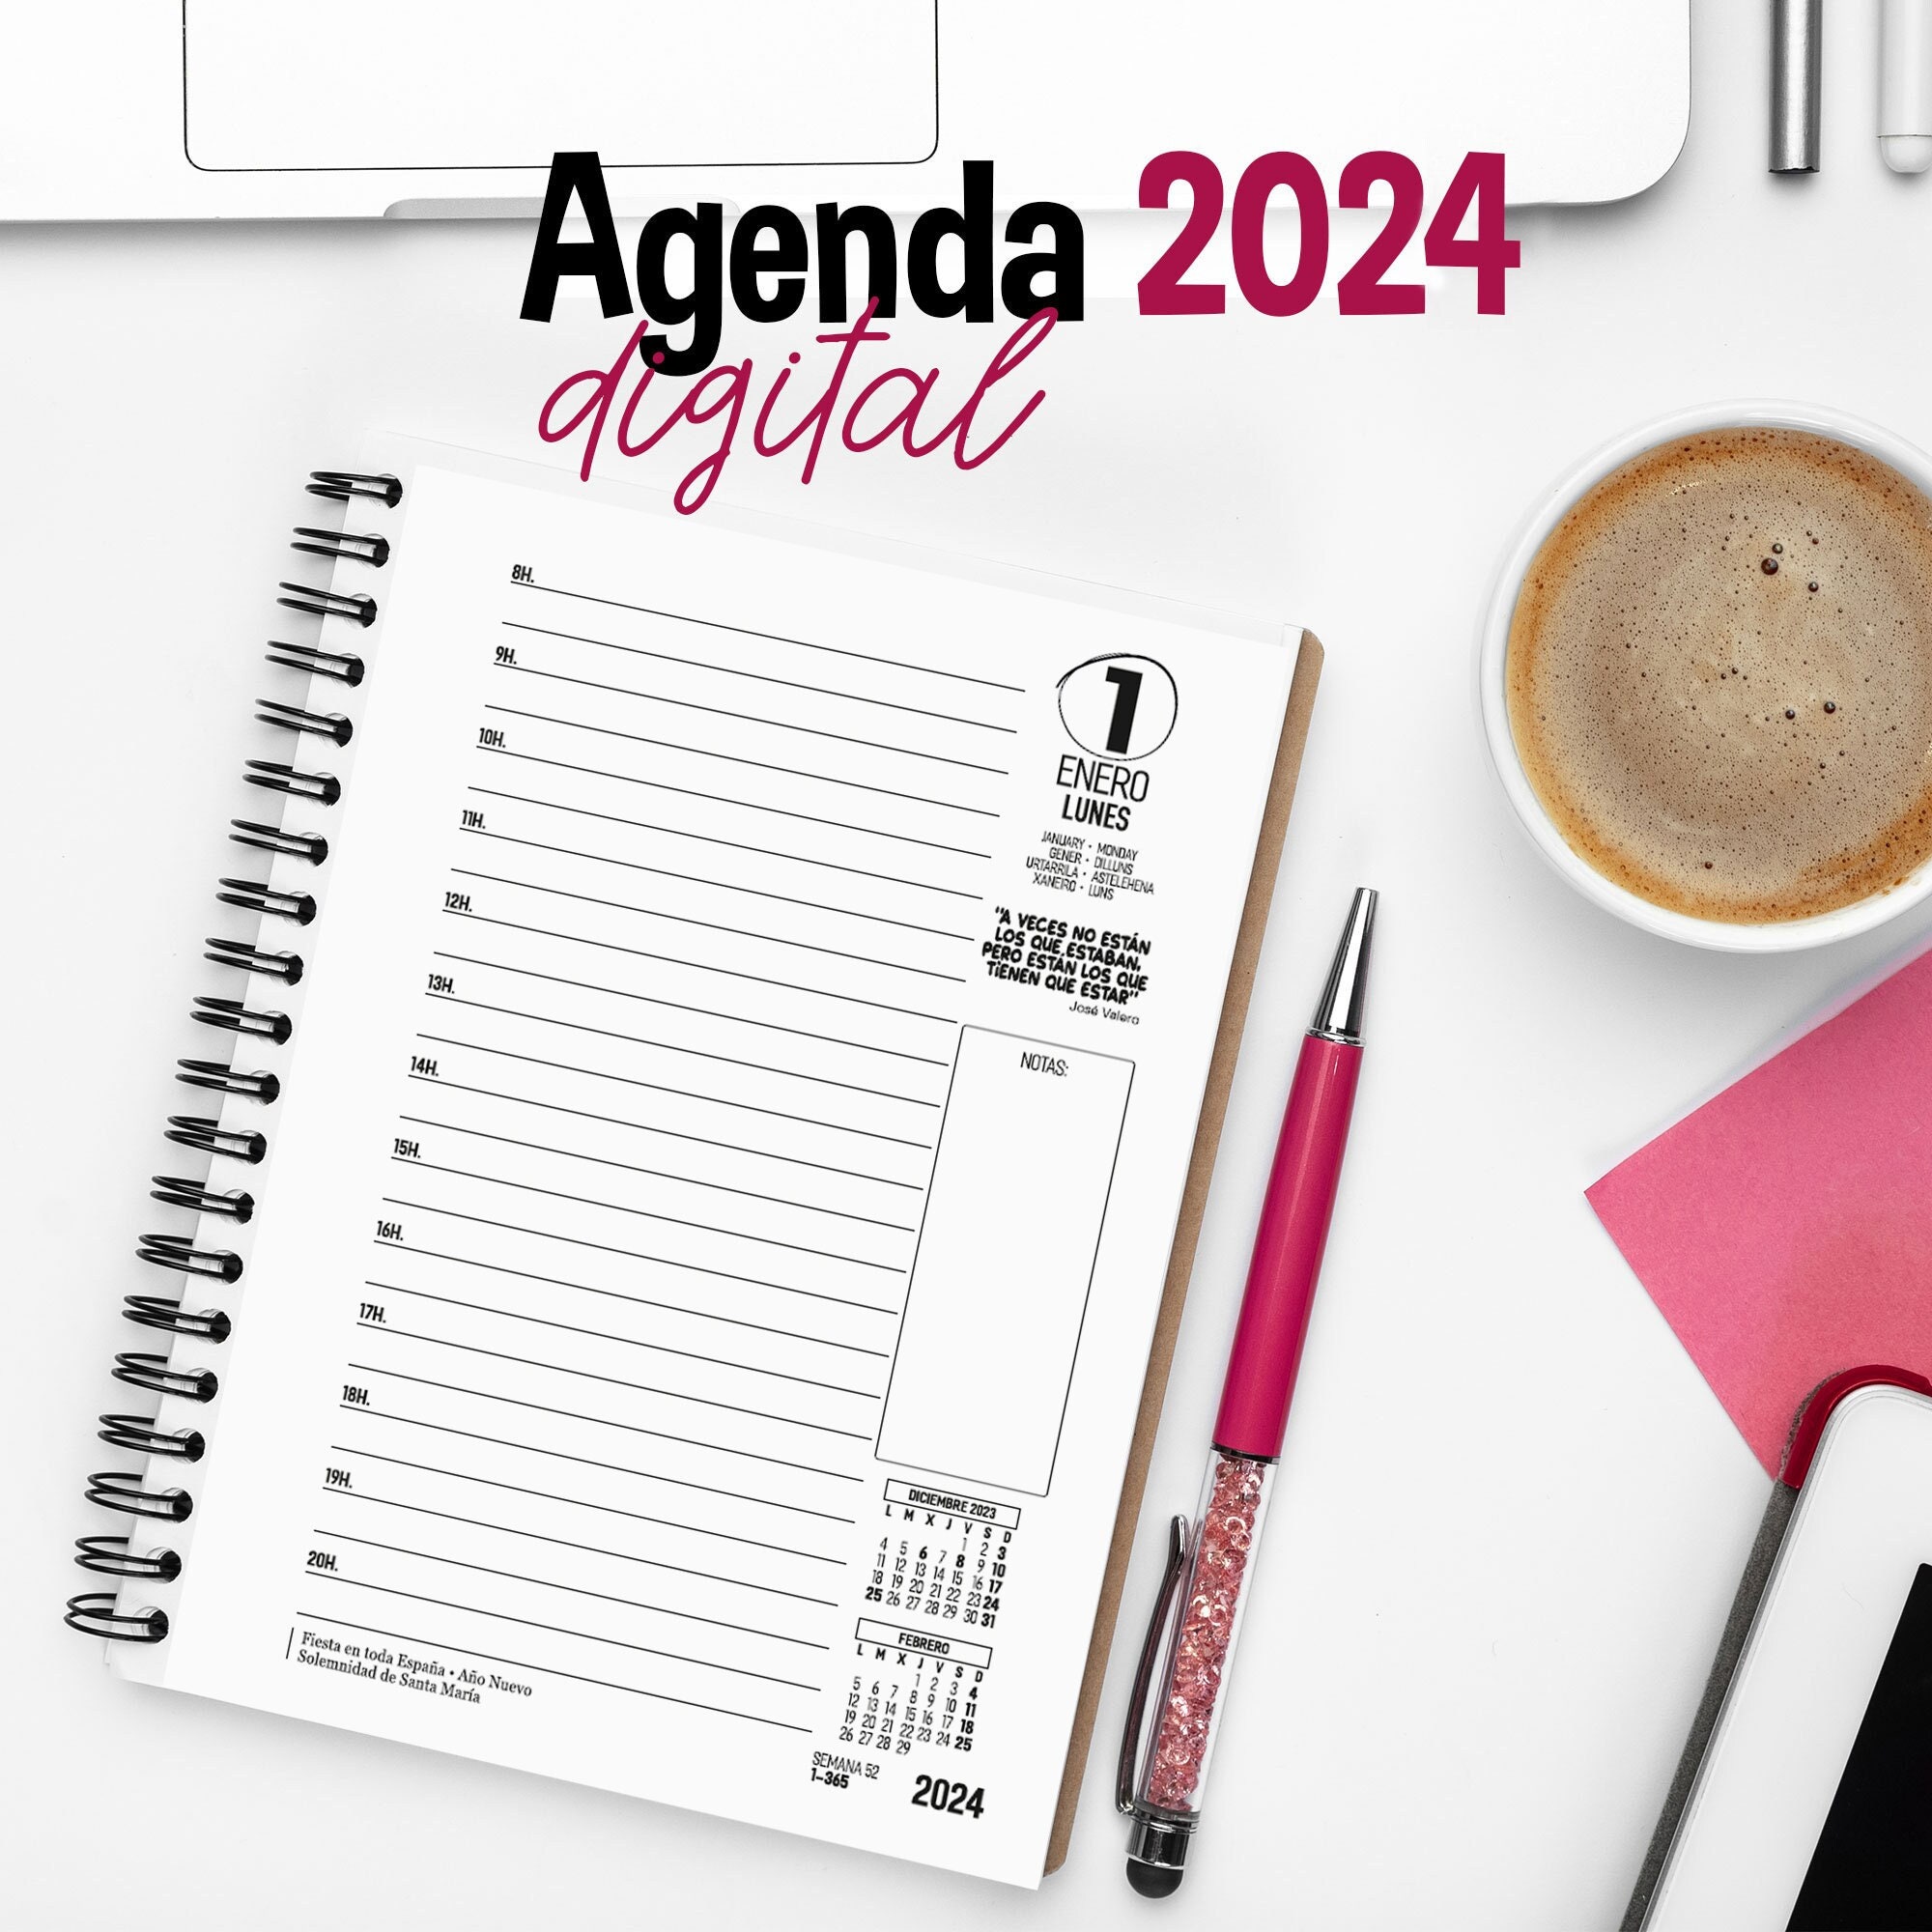 Agendas 2024 - Agenda, Los diseños más lindos